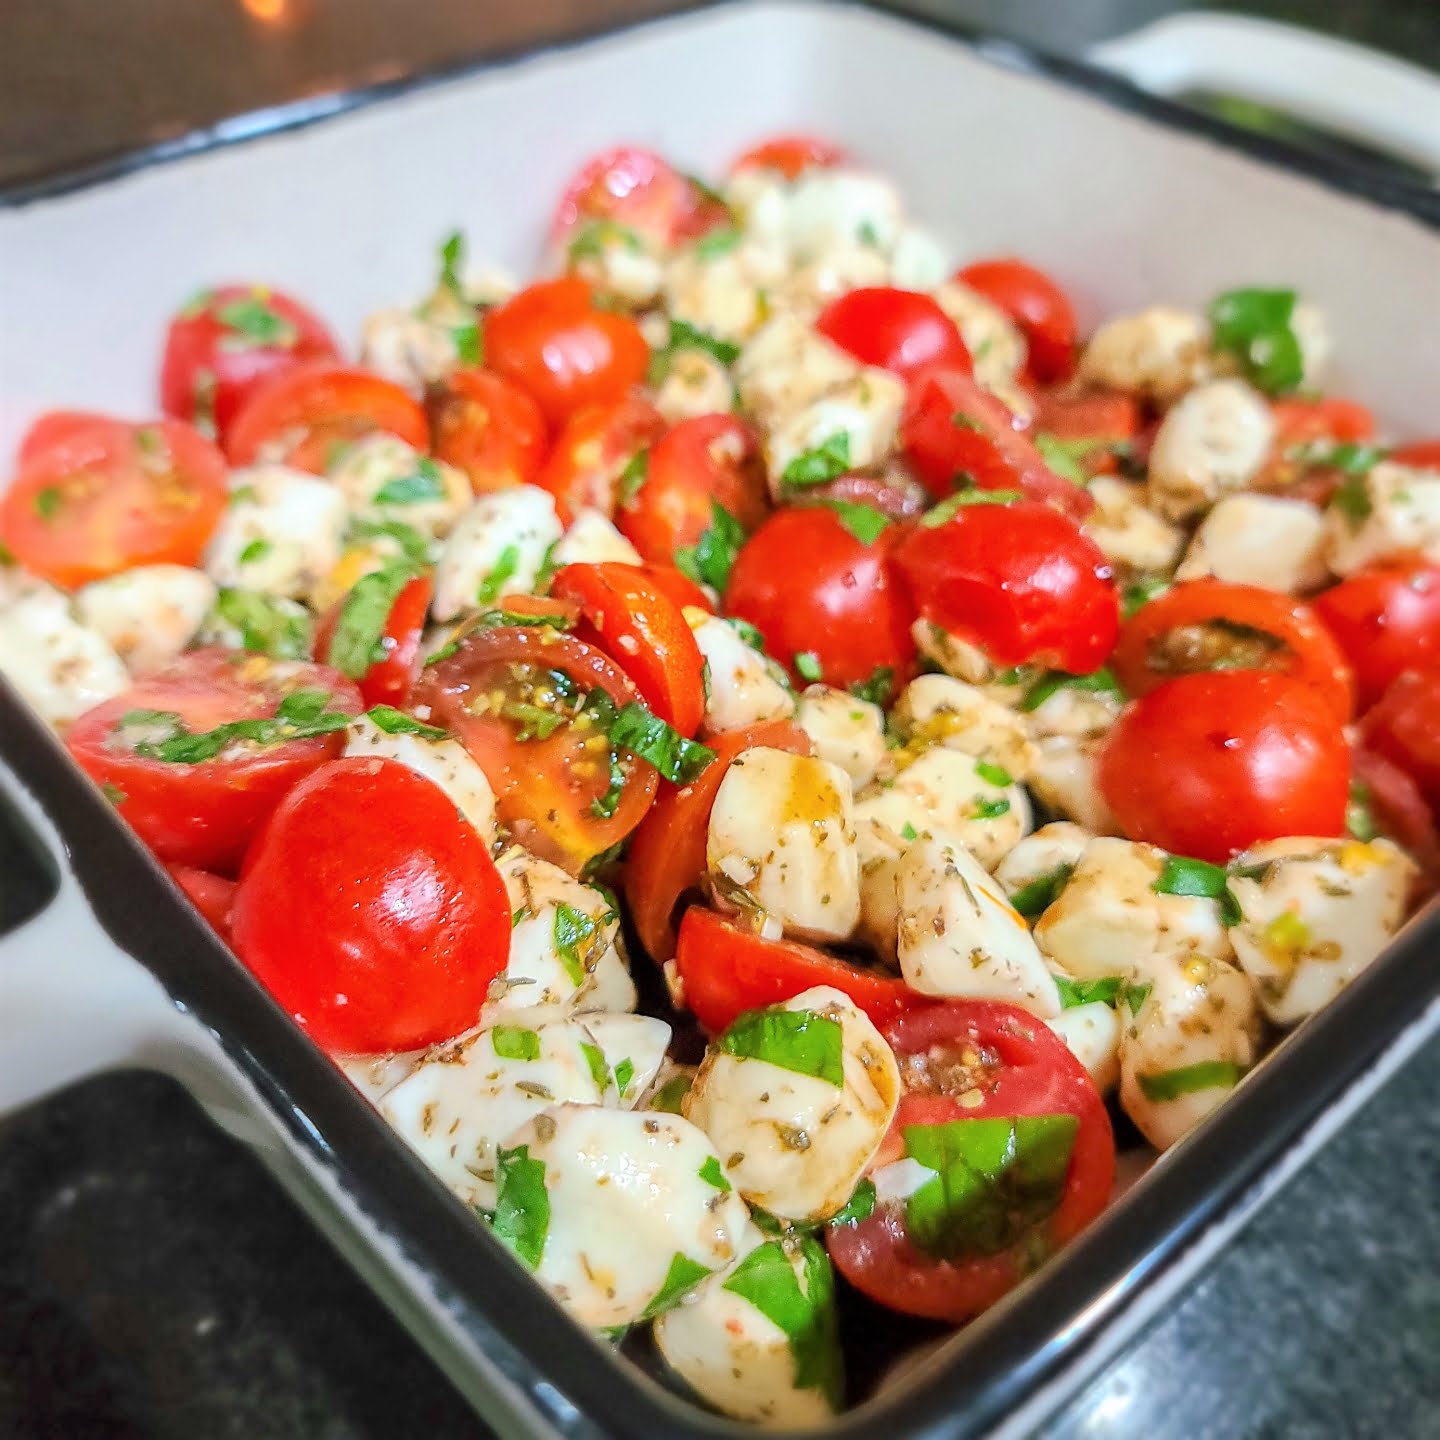 Tomato mozzarella salad with basil 40